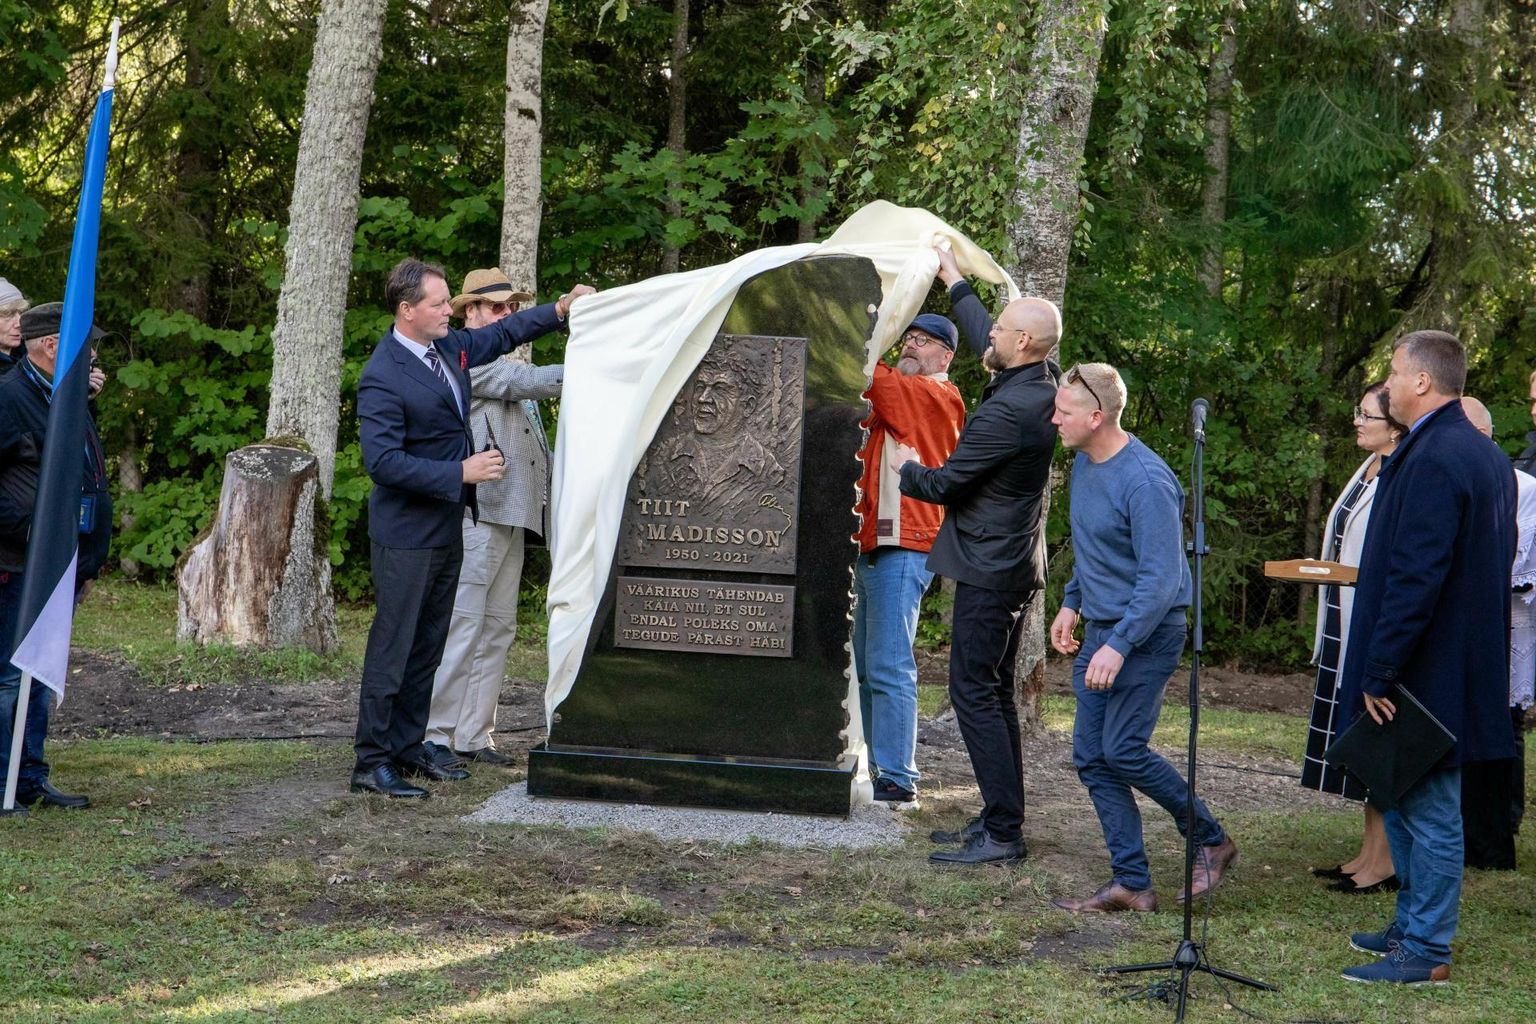 Tallinna linnavõim põhjendab vabadusvõitleja Tiit Madissoni mälestusmärgi mitte lubamist Hirveparki muuhulgas sellega, et SAPTK on juba rajanud Madissoni mälestusmärgi Lihulasse.